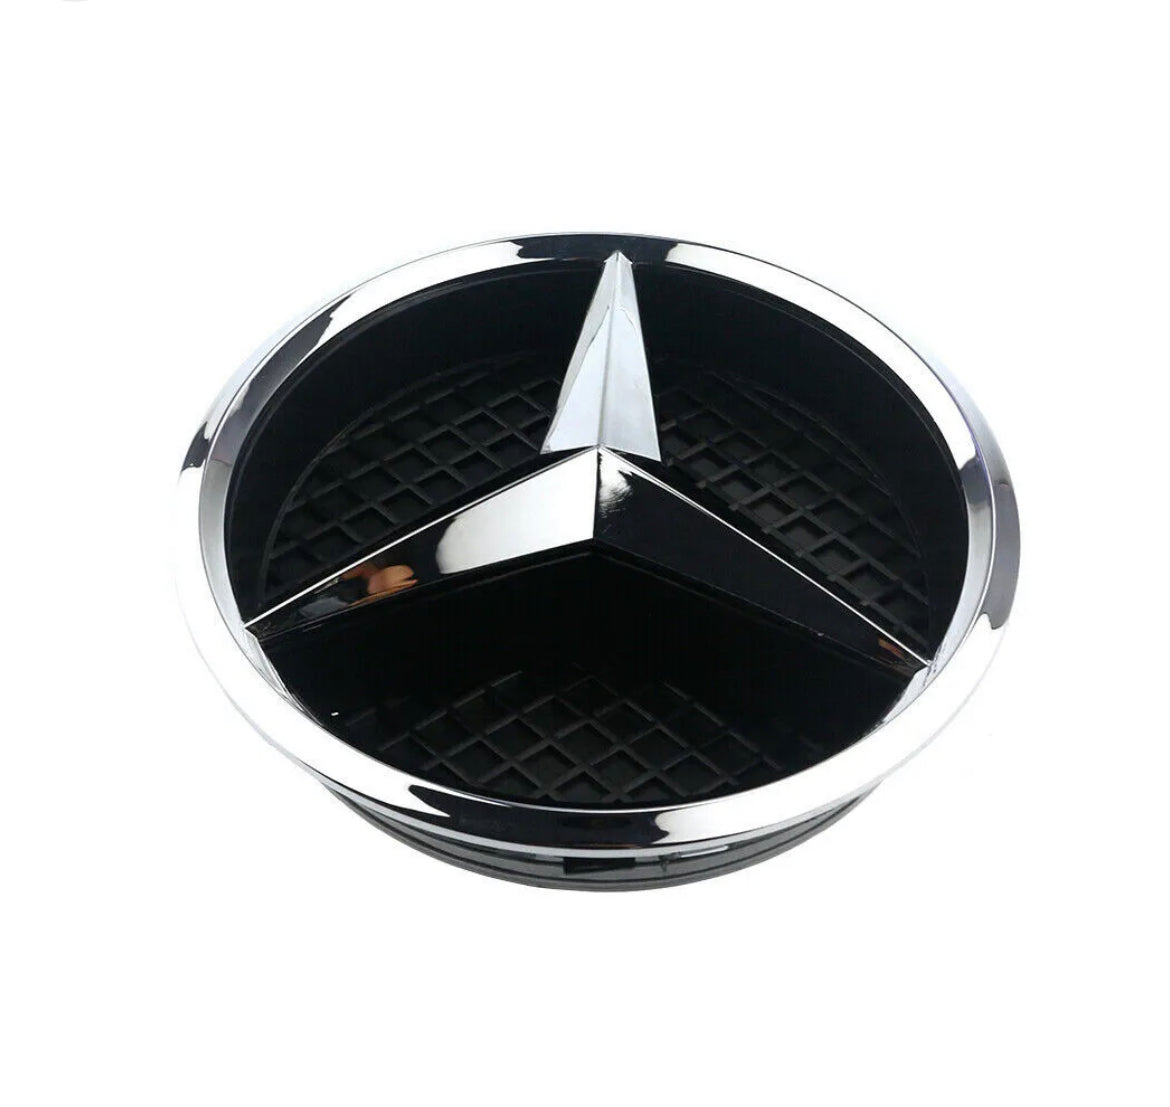 Emblème de logo Mercedes Classe A - Povcars